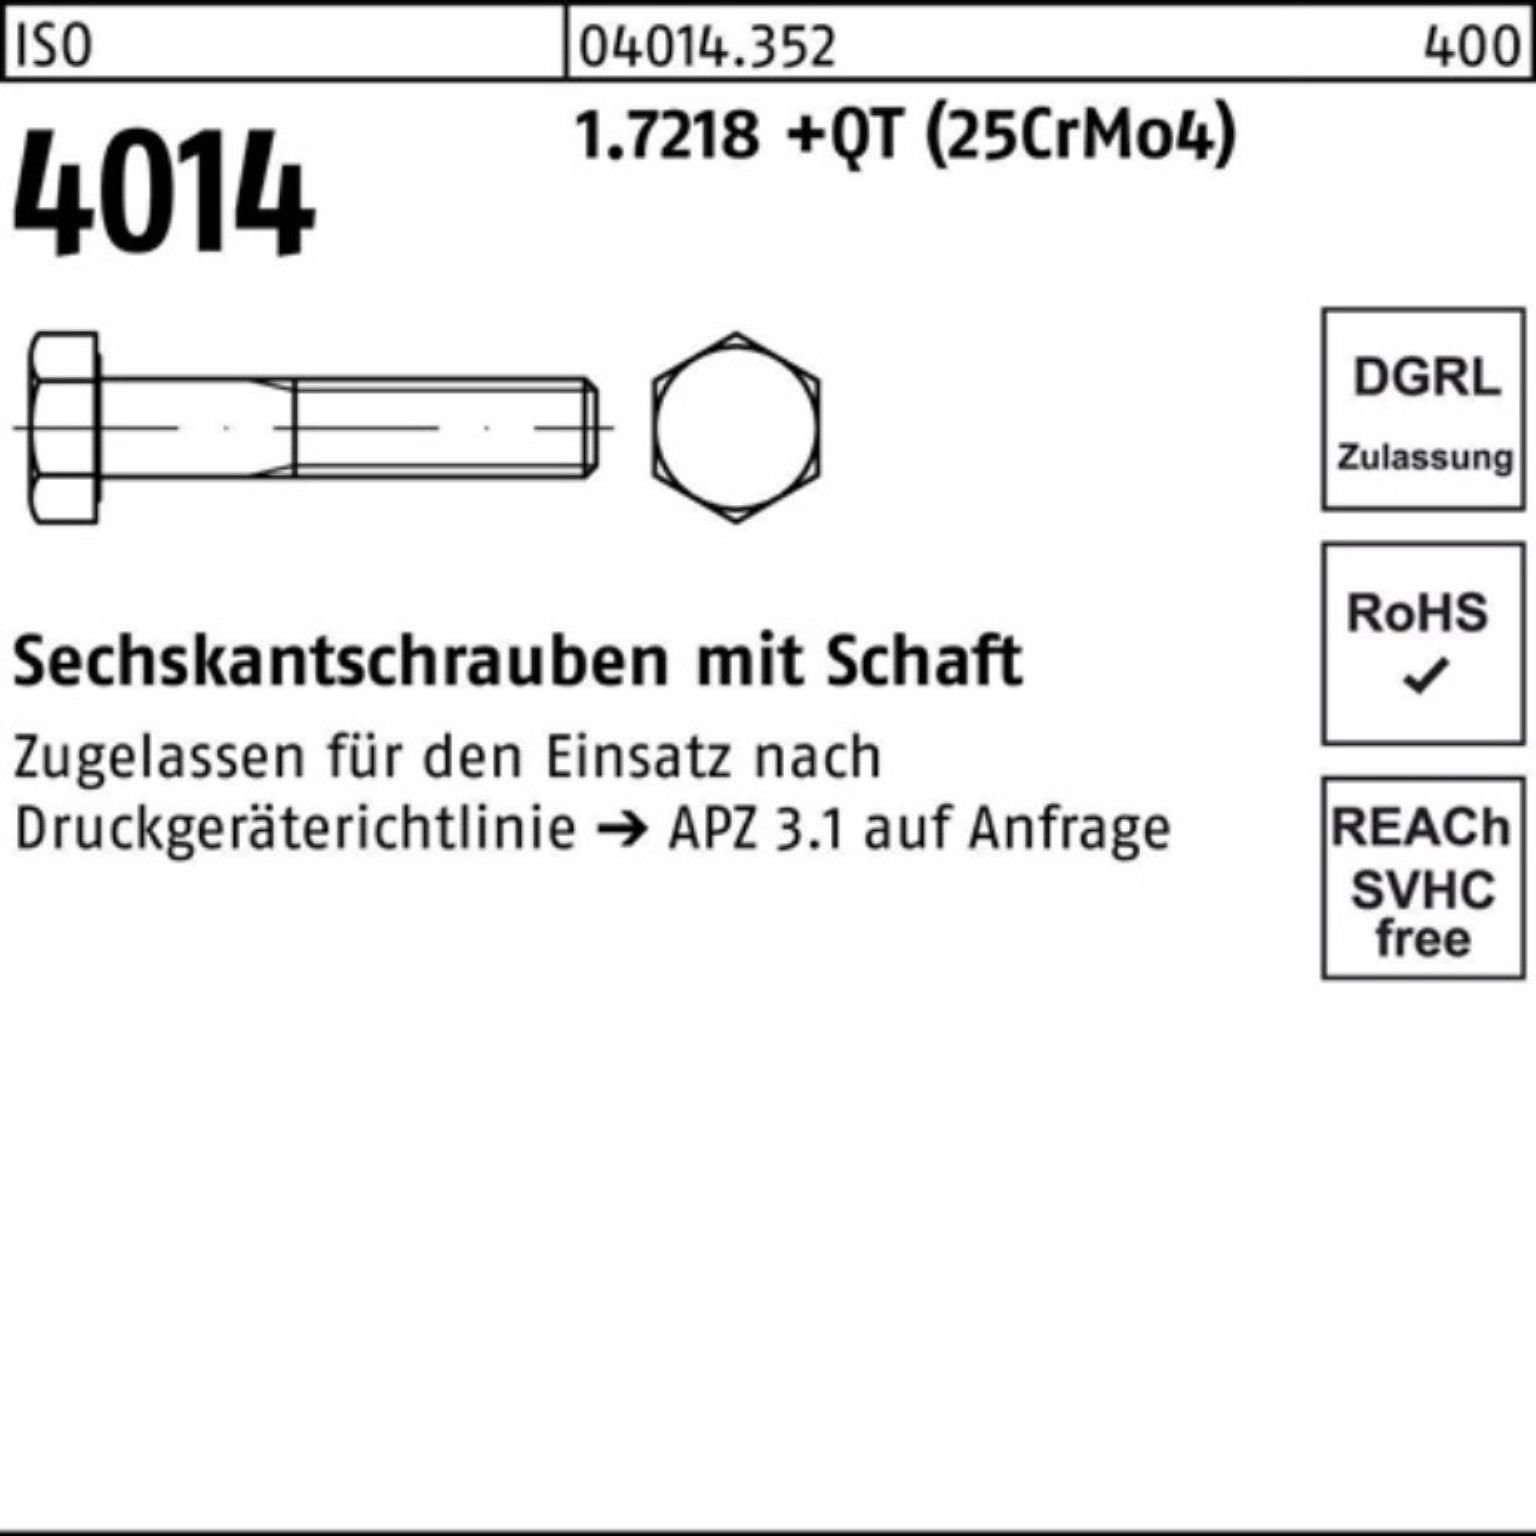 M20x Bufab (25Cr Pack Sechskantschraube Schaft Sechskantschraube ISO 120 +QT 4014 100er 1.7218